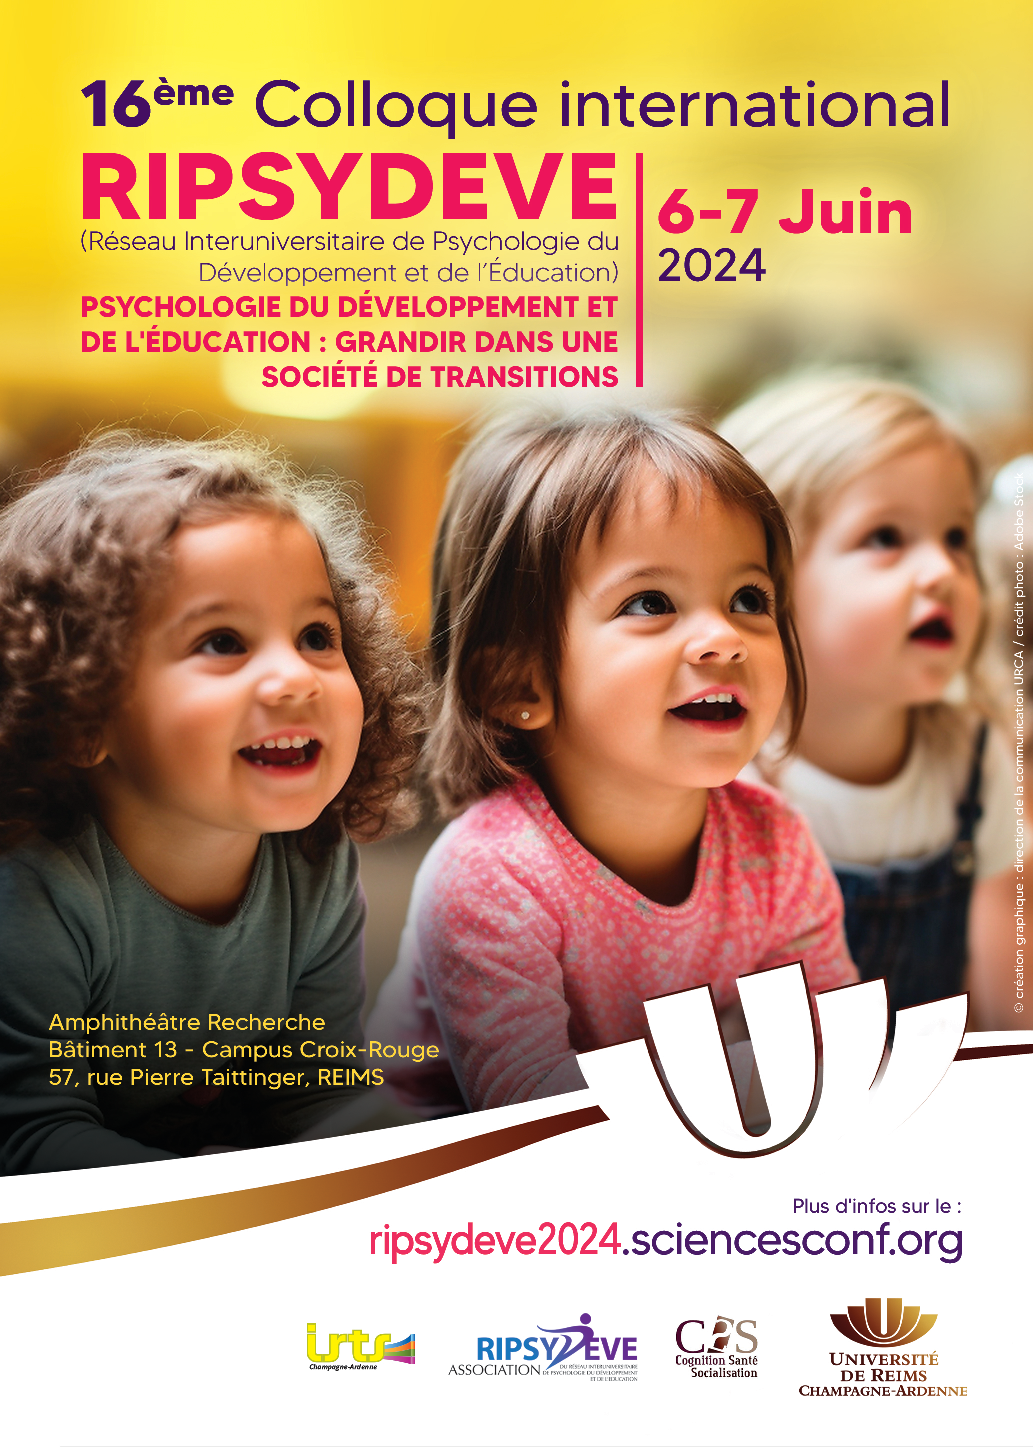 Le C2S et l'URCA accueillent la 16ème édition du colloque RIPSYDEVE